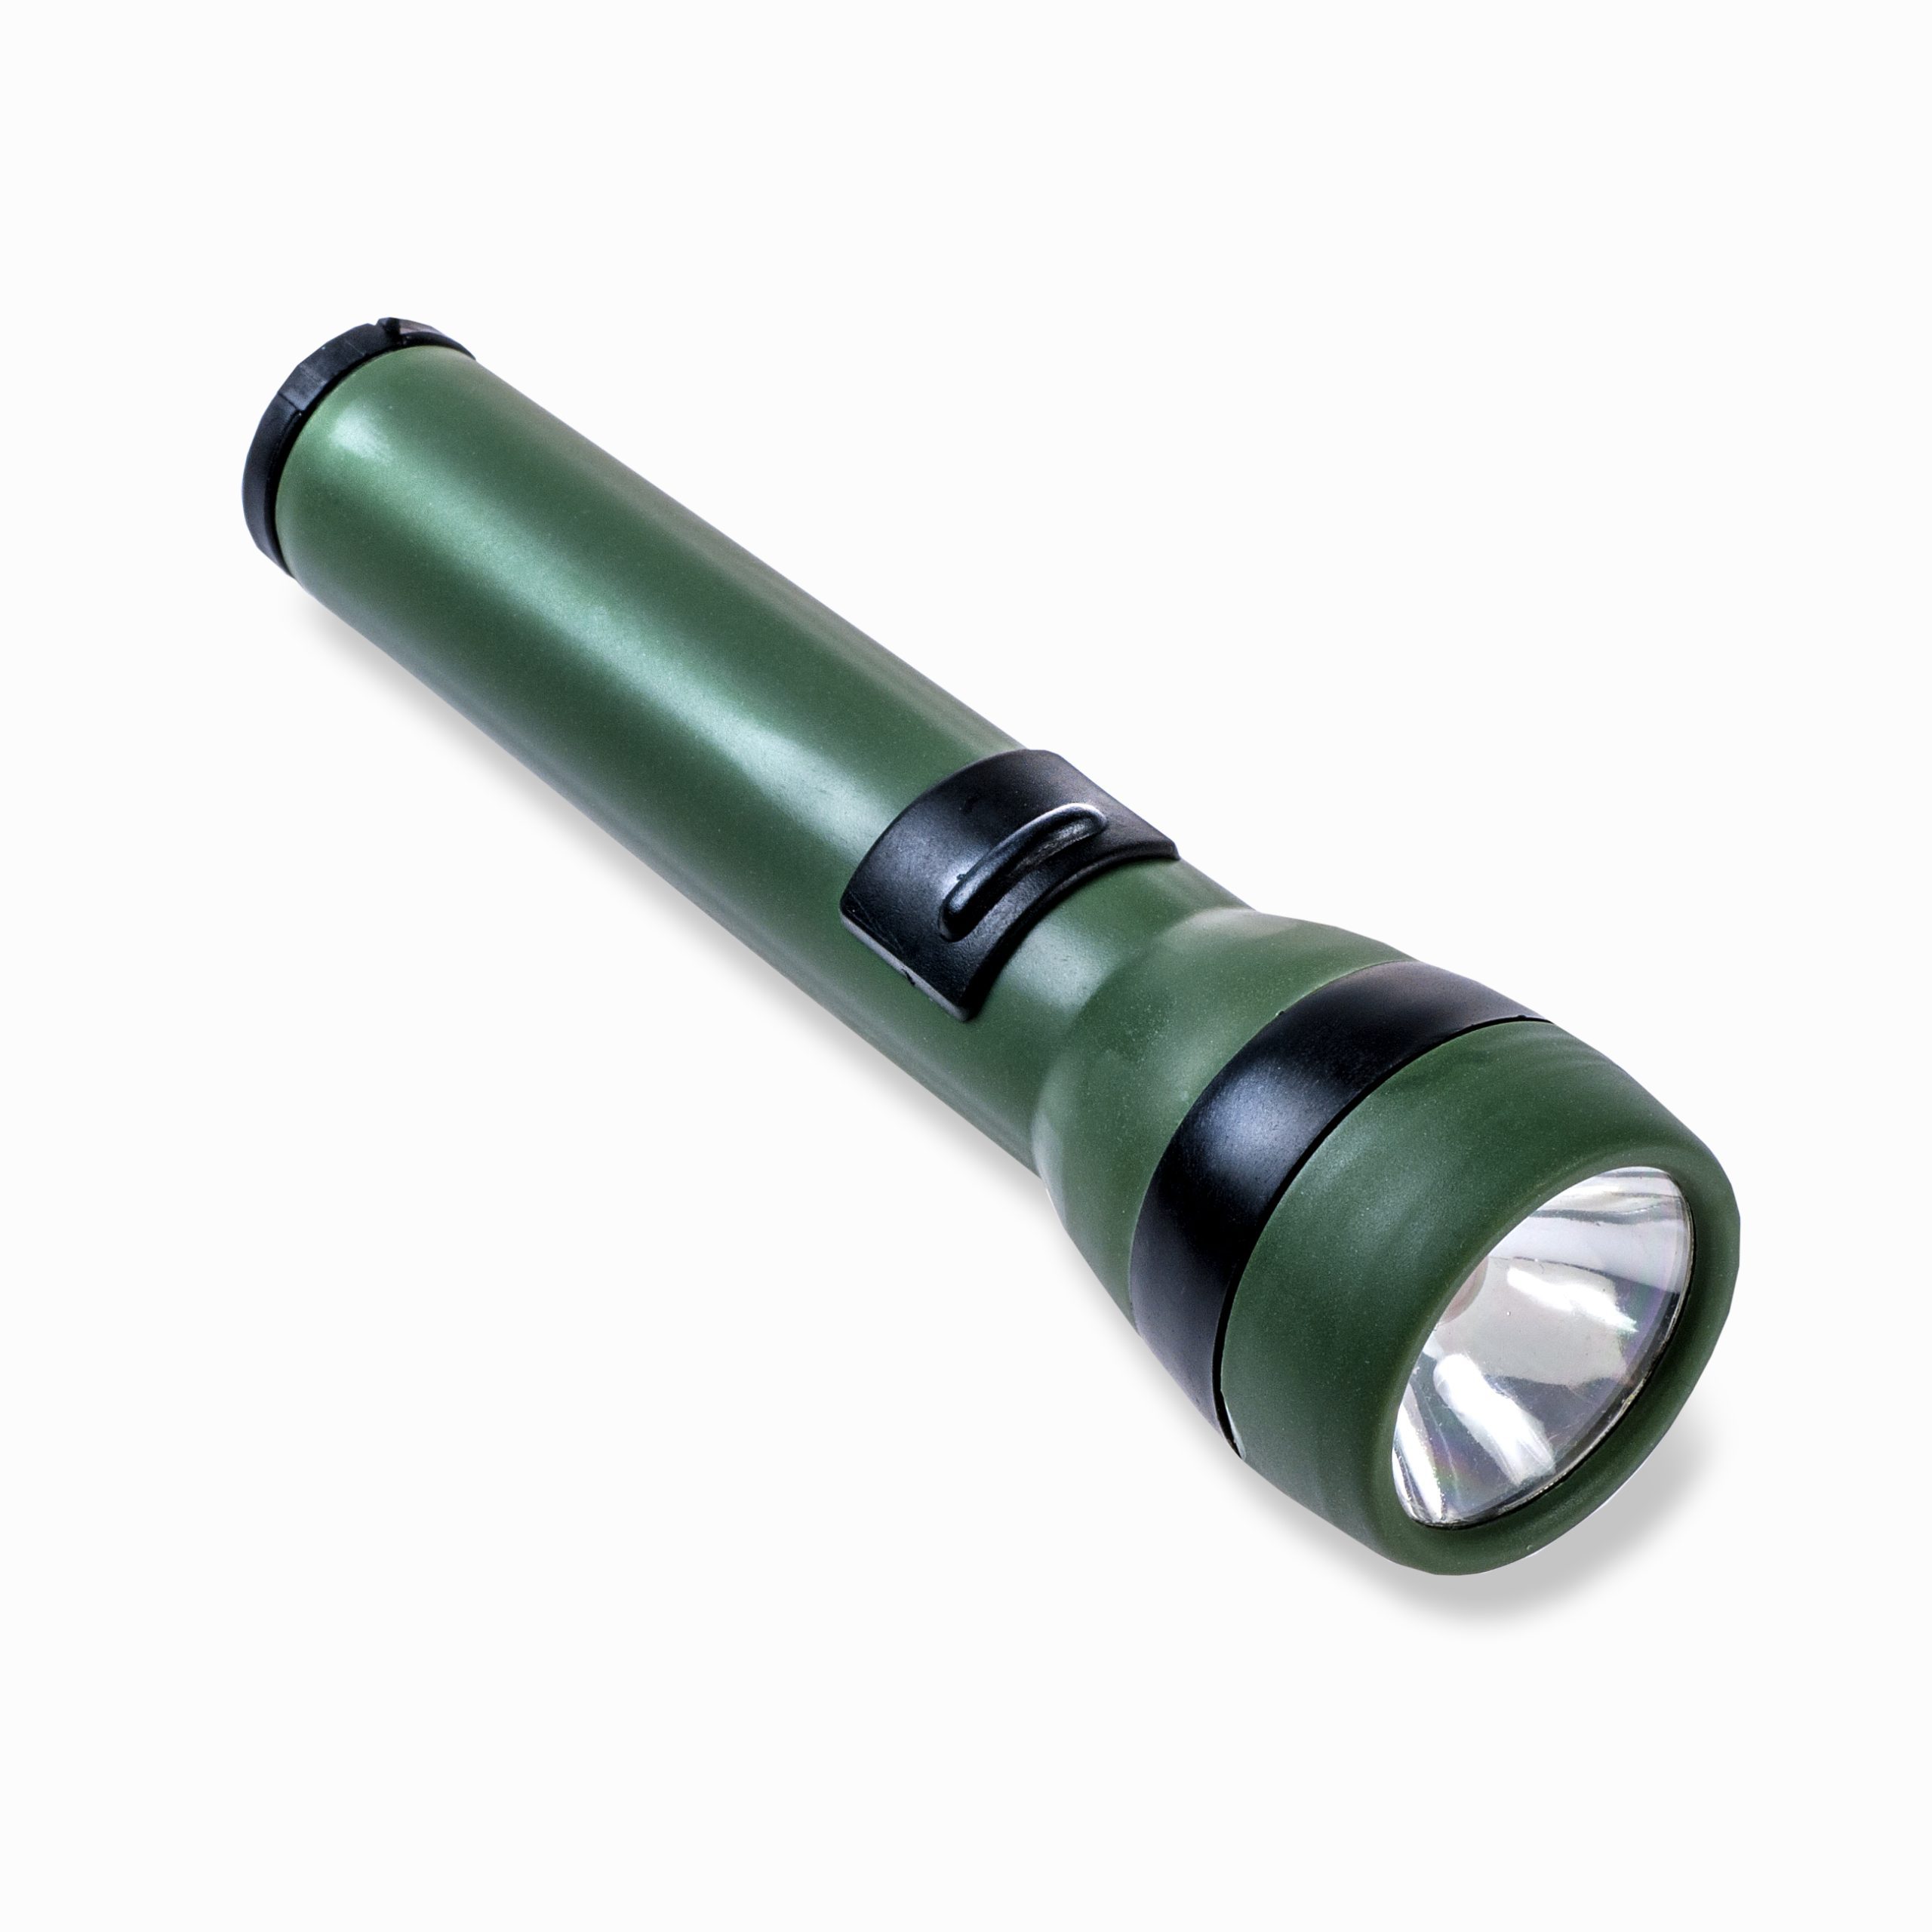 Bộ sản phẩm ống nhòm, la bàn, đèn pin Carson HU-401 AdventurePak - Hàng chính hãng